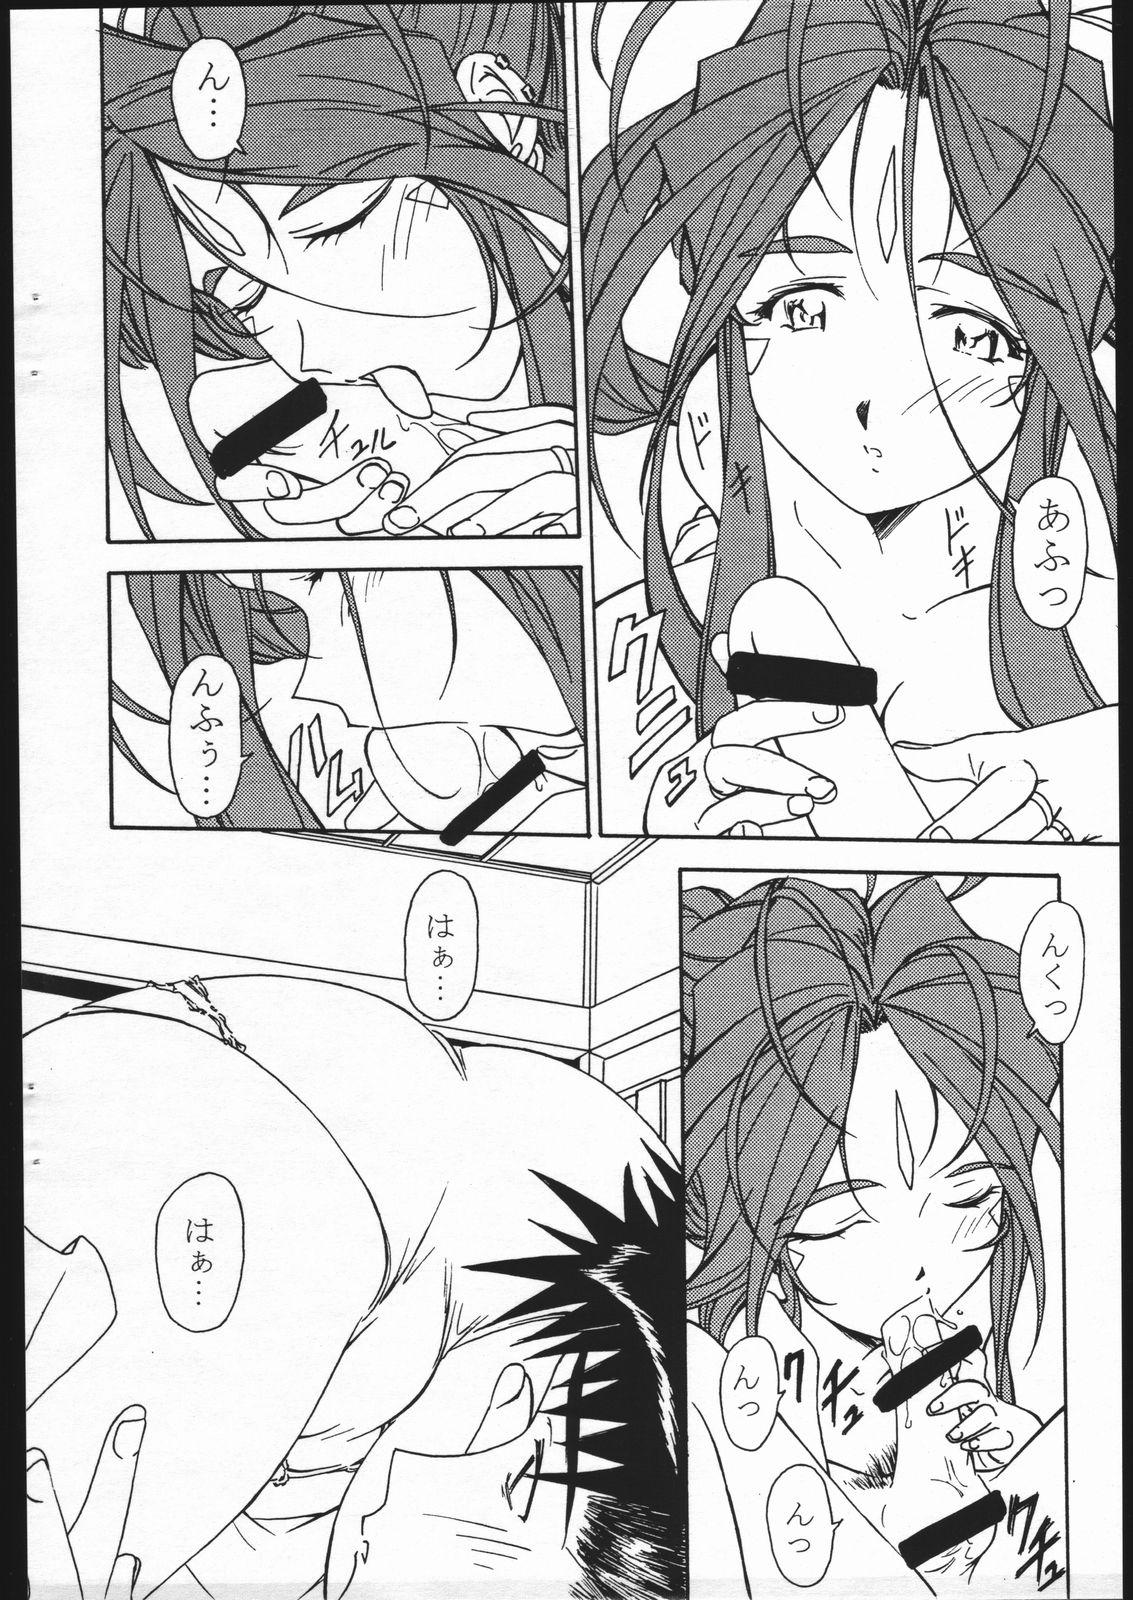 Chacal Ohayou Gozaimasu! Megami-sama! - Ah my goddess Woman - Page 7